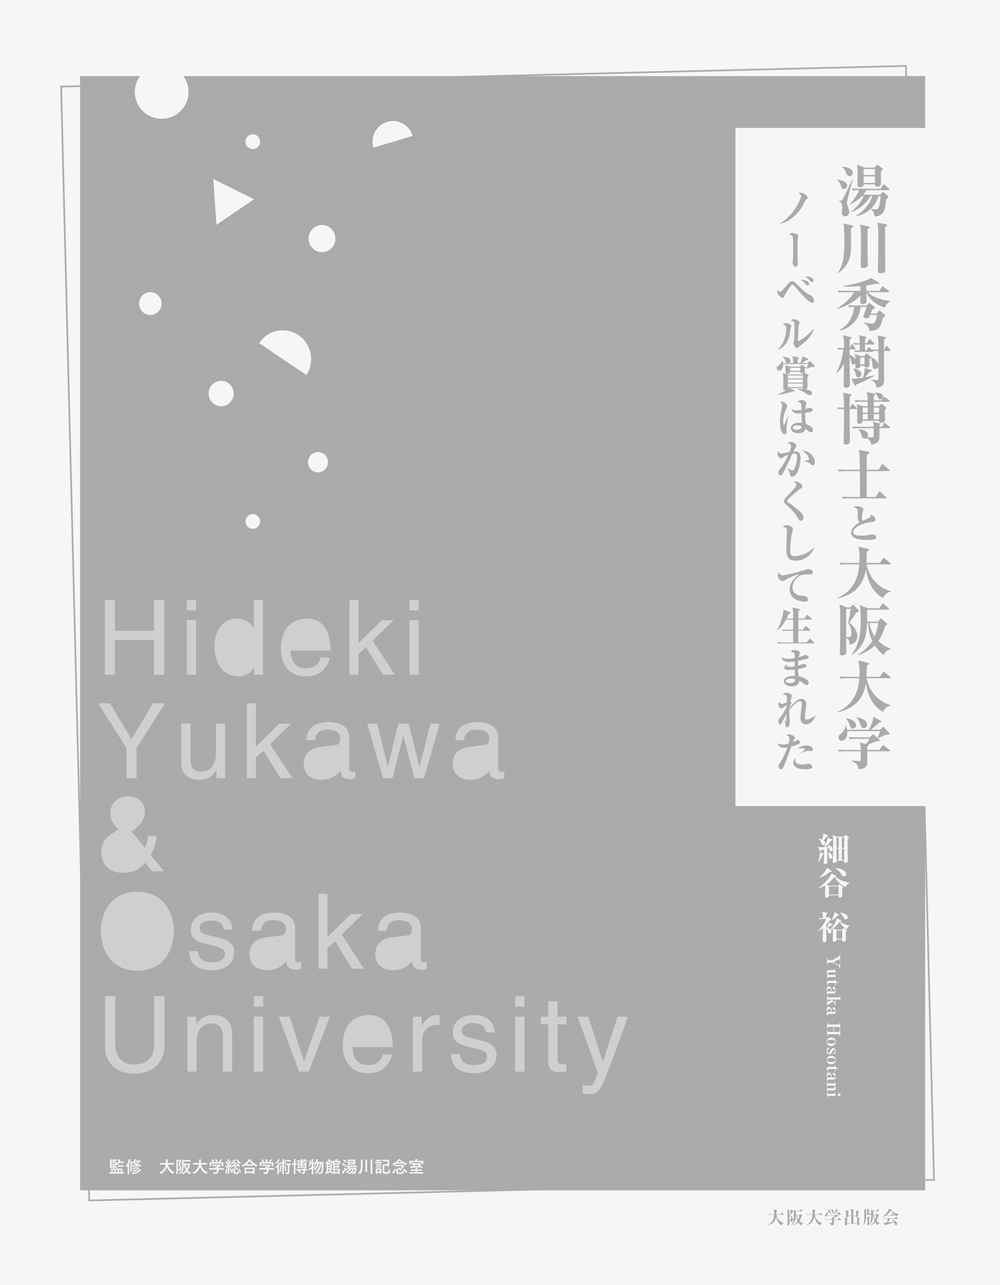 湯川秀樹博士と大阪大学 ノーベル賞はかくして生まれた